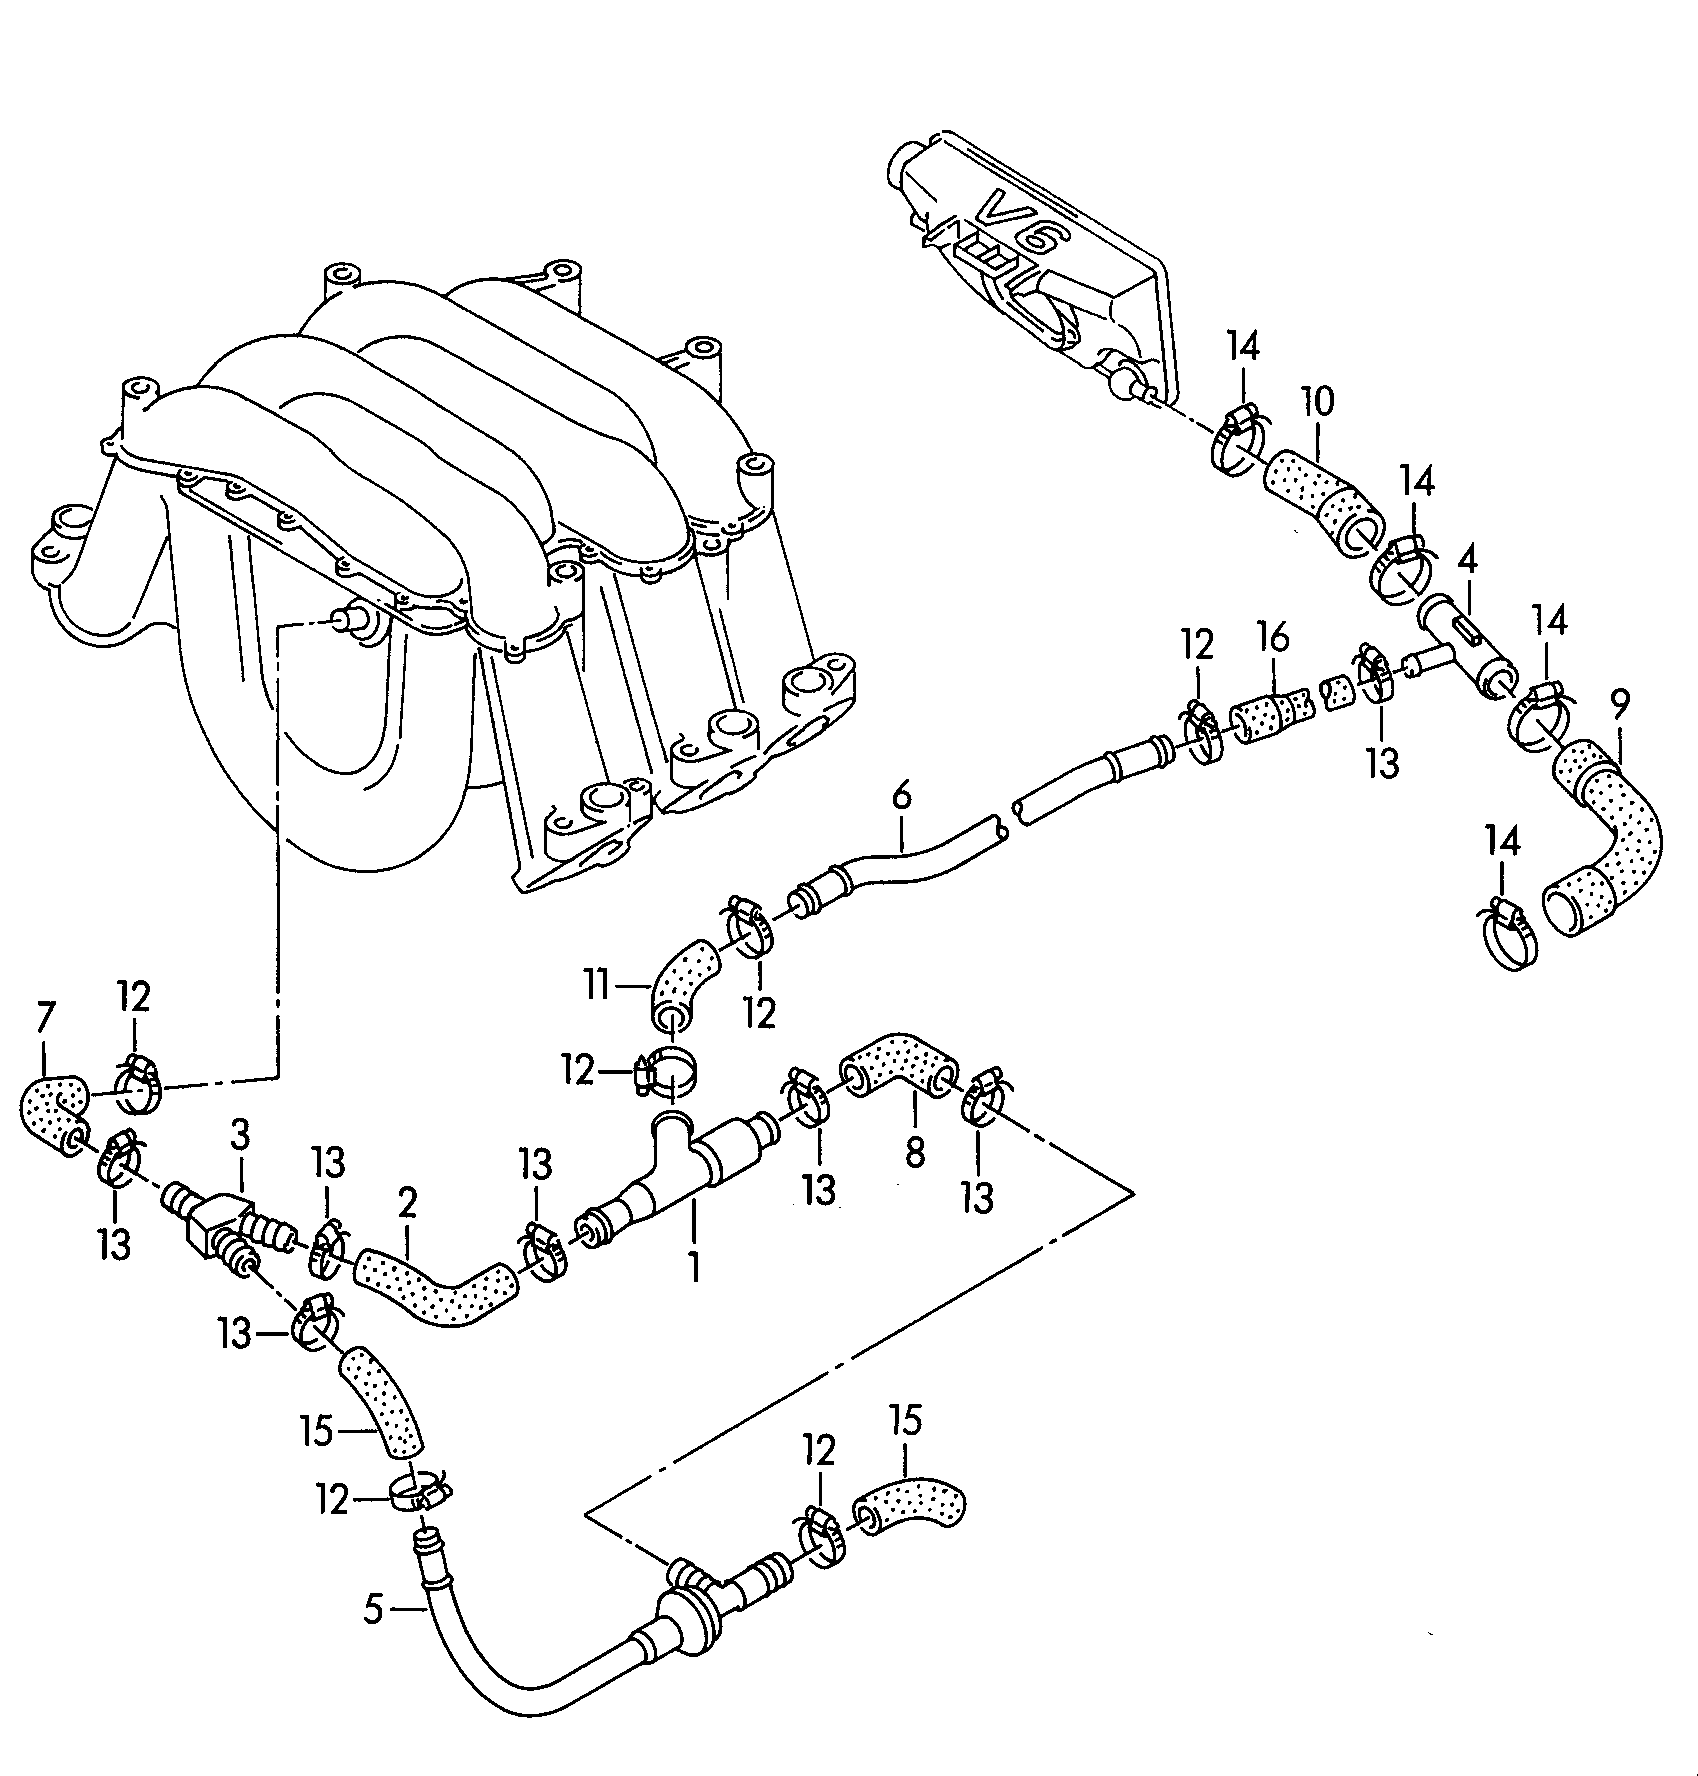 pompe aspirante 2,6/2,8lautomatique - Audi Cabriolet - aca